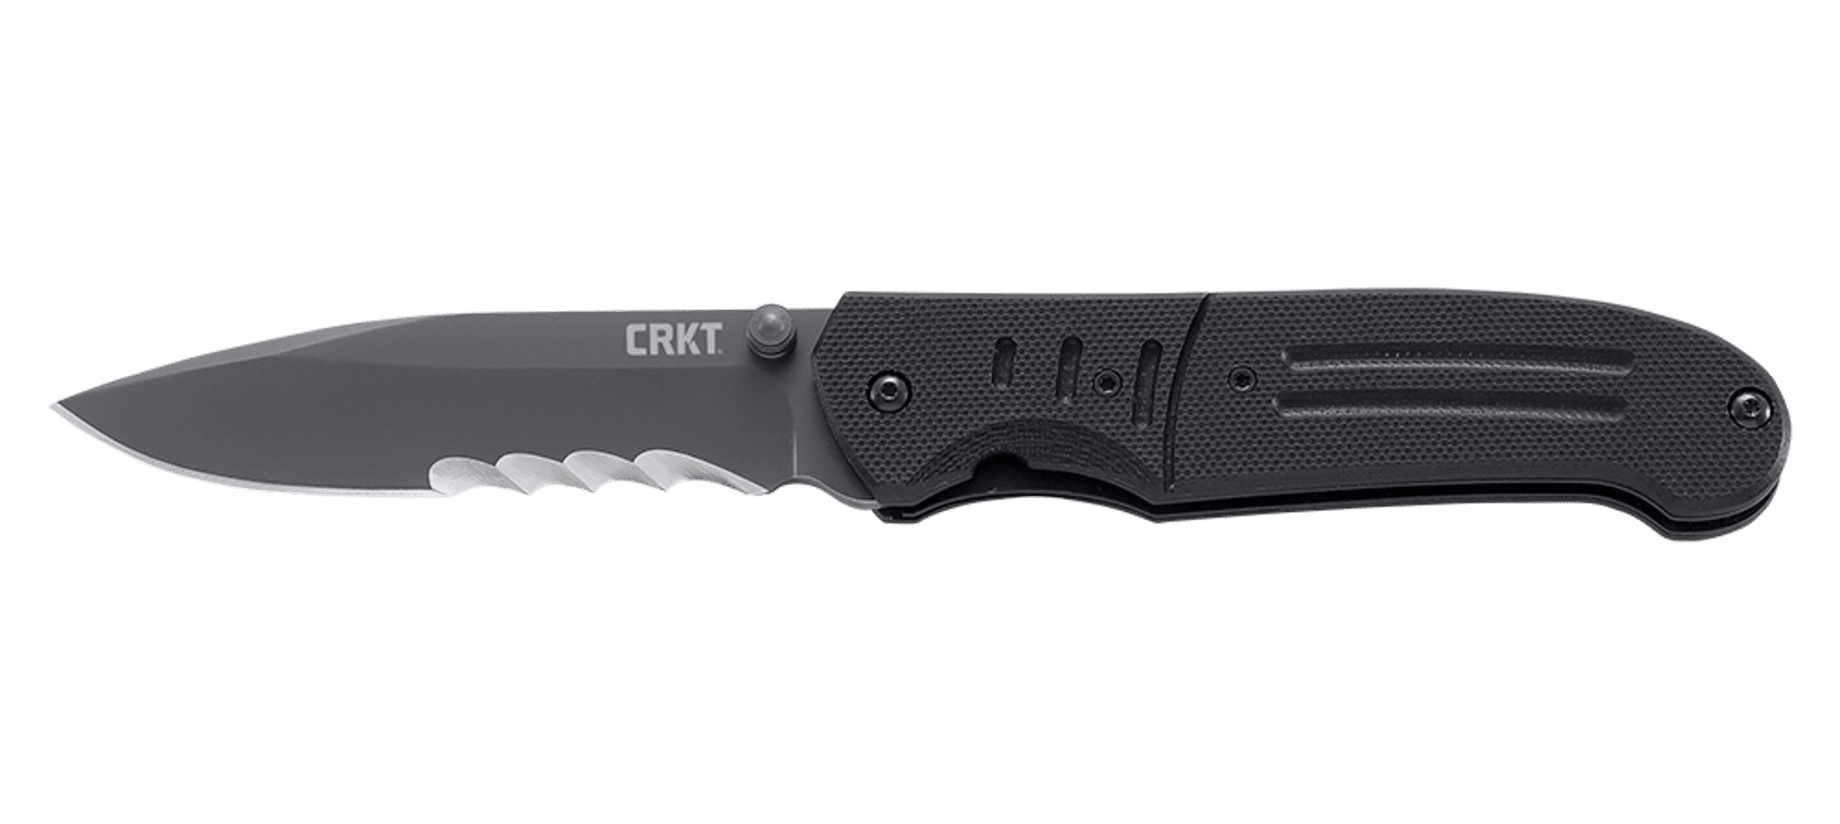 Полуавтоматический складной нож Ignitor T Veff Serrations™, CRKT 6865, сталь 8Cr14MoV Titanium Nitride, рукоять стеклотекстолит G10 - фото 6